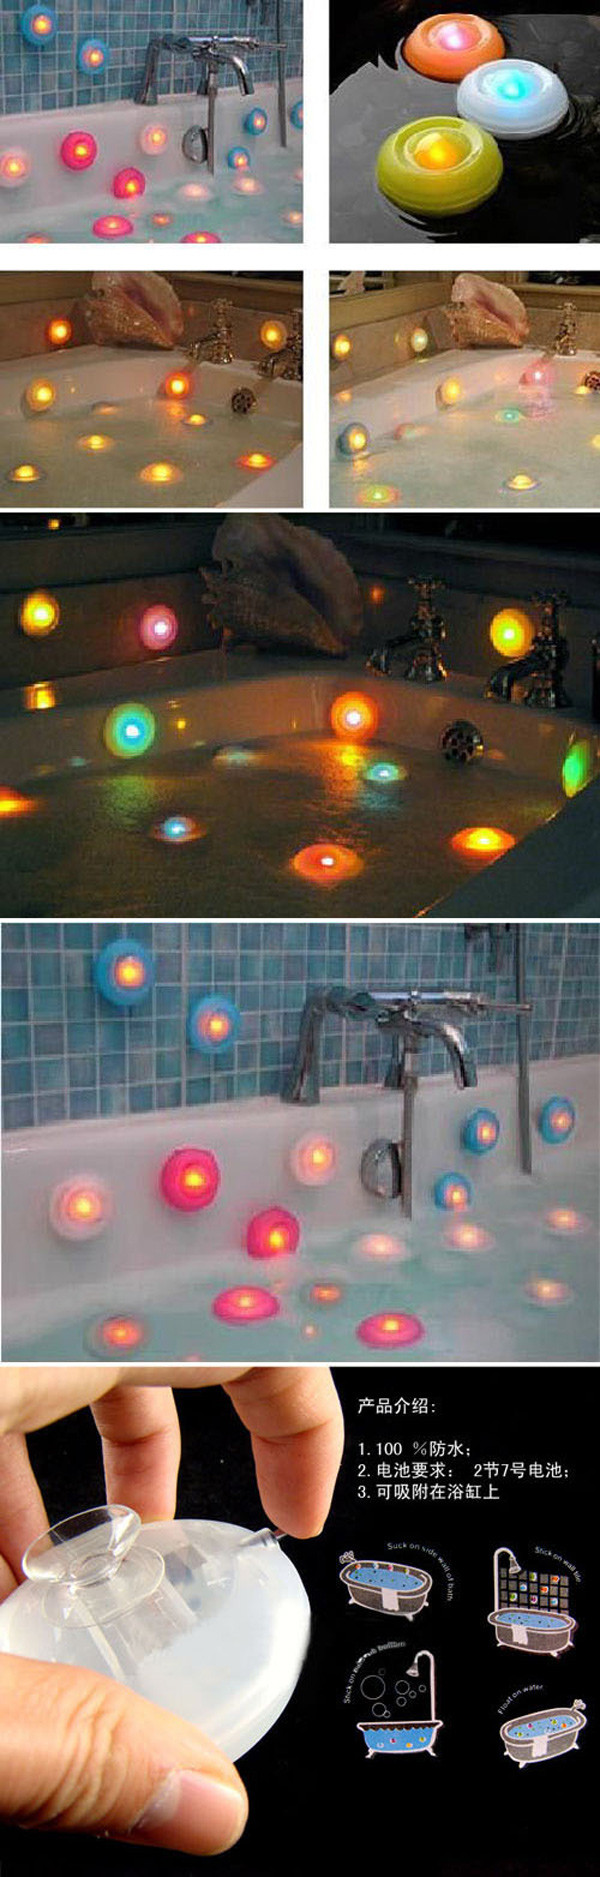 普润 创意生活 七彩泡泡灯 七彩LED浴缸灯 浴室灯 2只装。